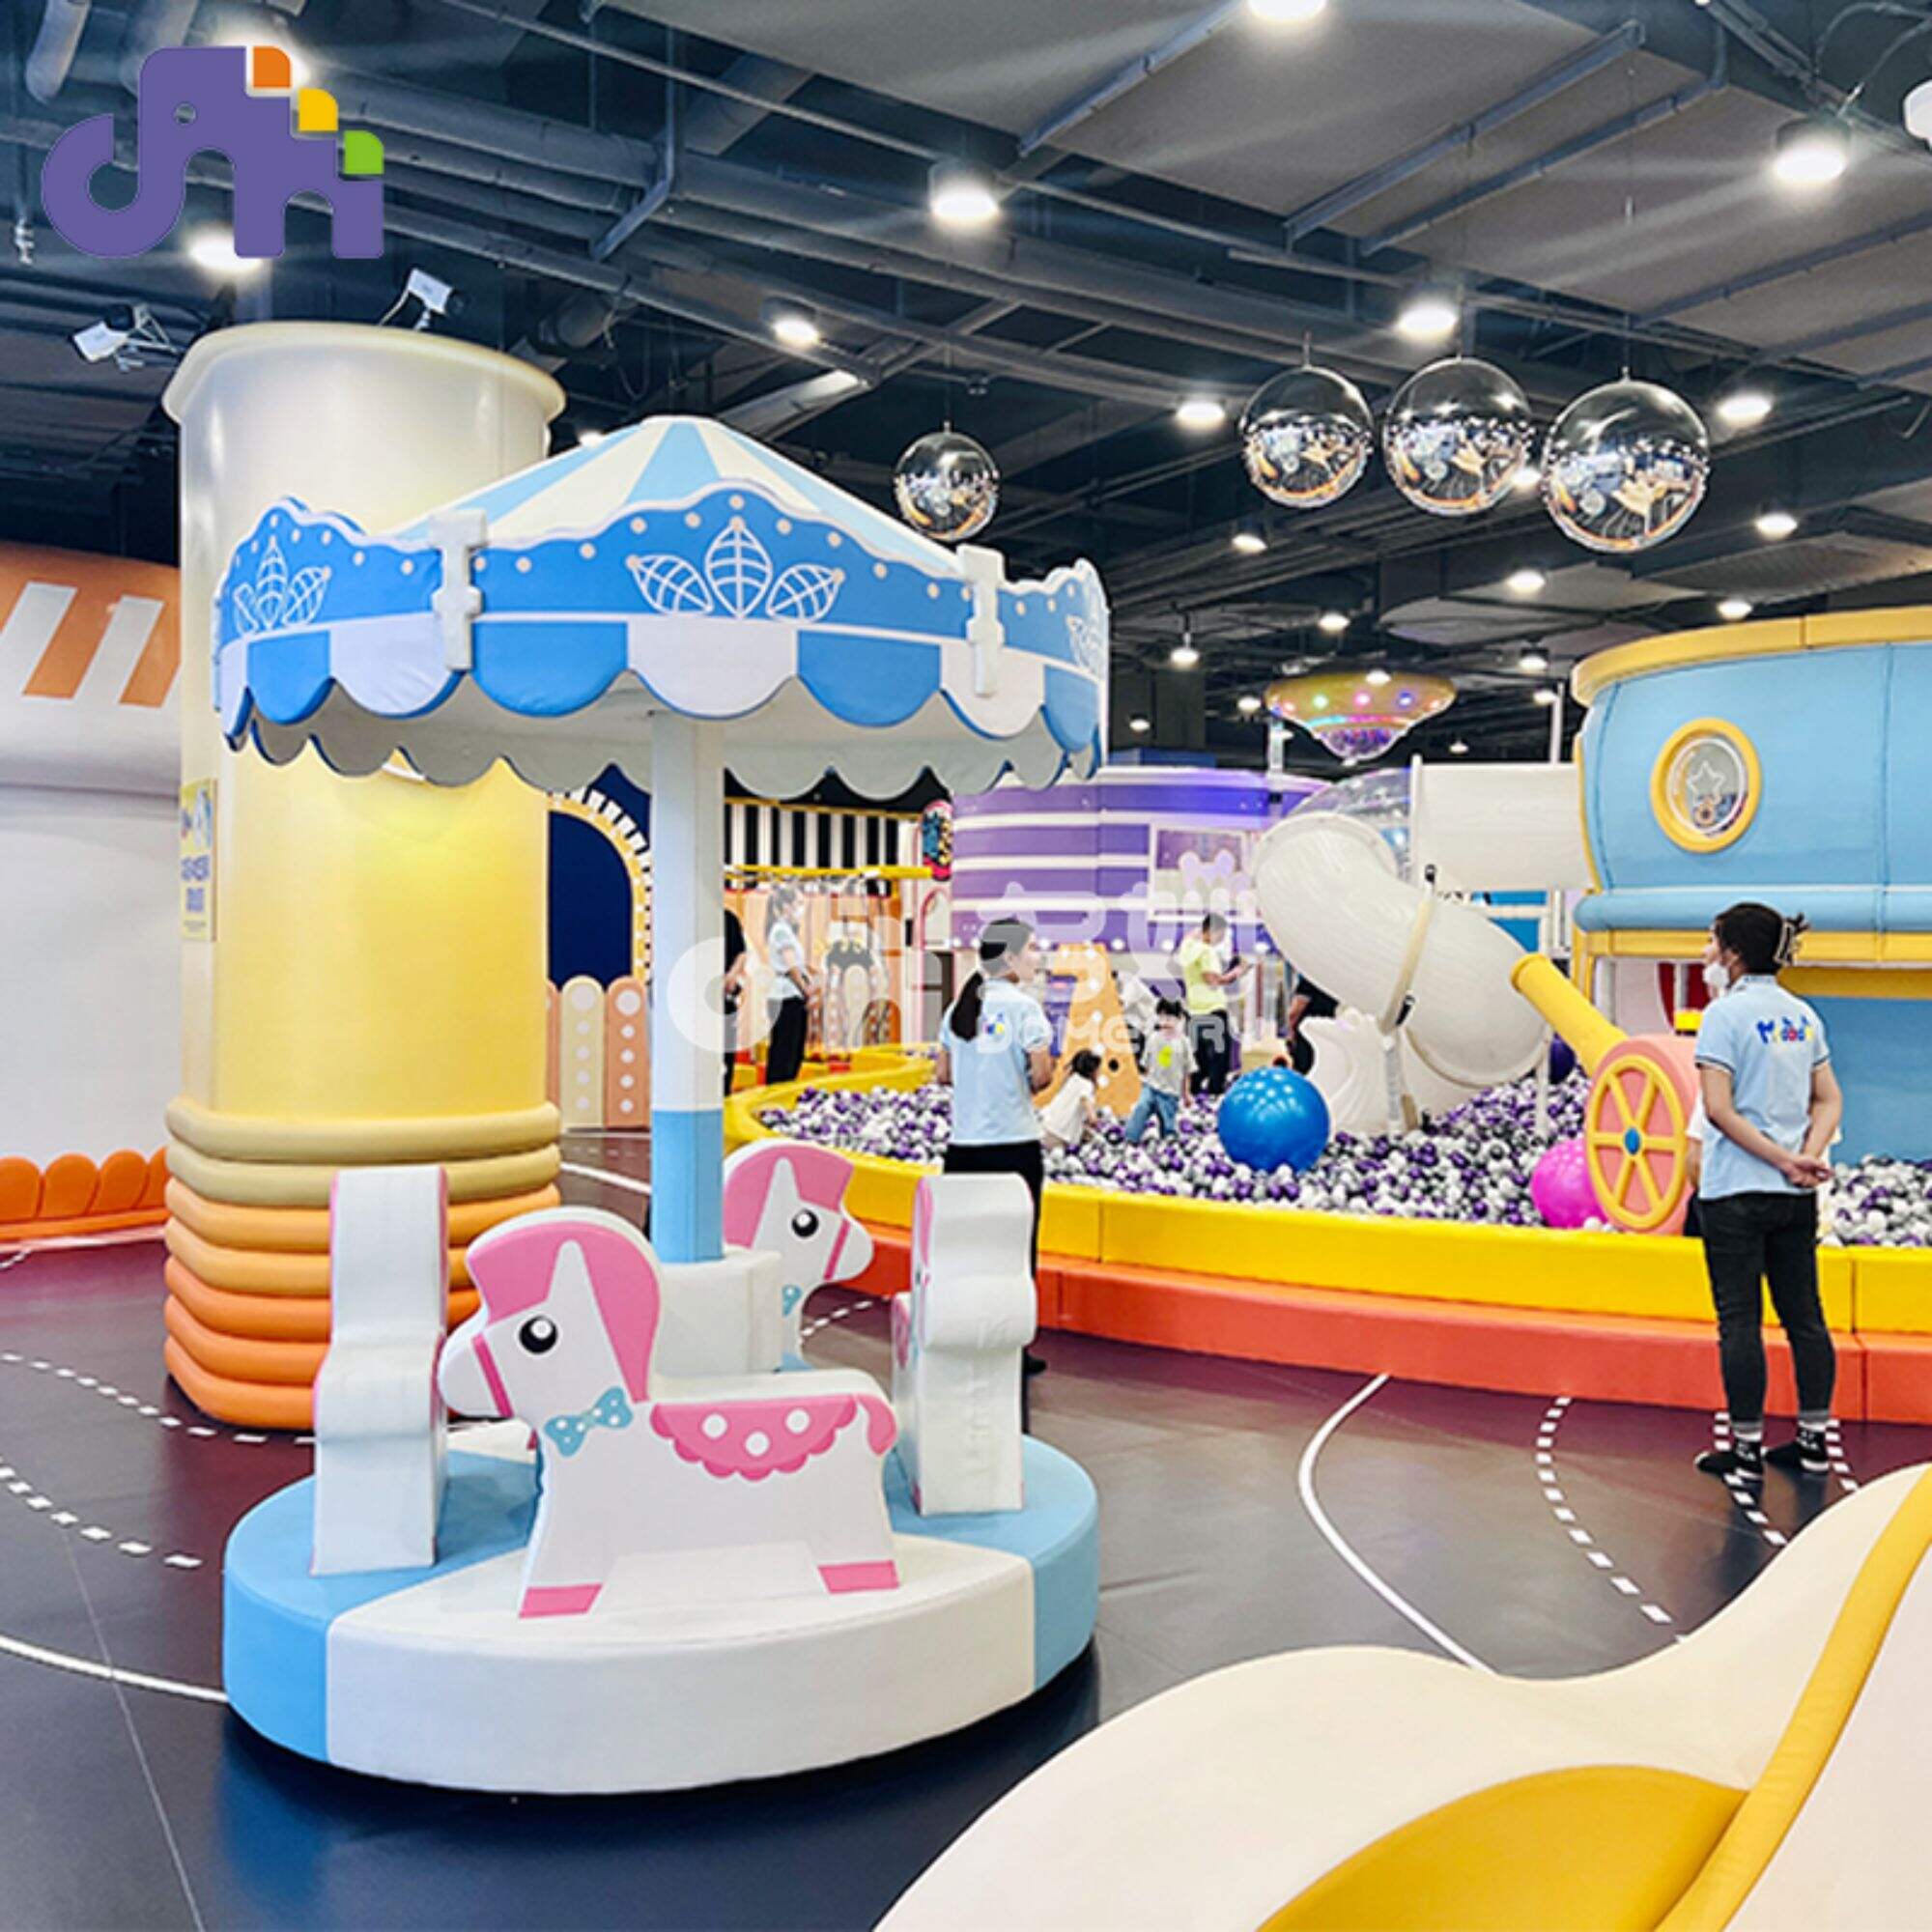 Tema igre Naughty castle djeca se igraju park tobogan središnja zona za igru ​​unutarnje dječje zabavno igralište